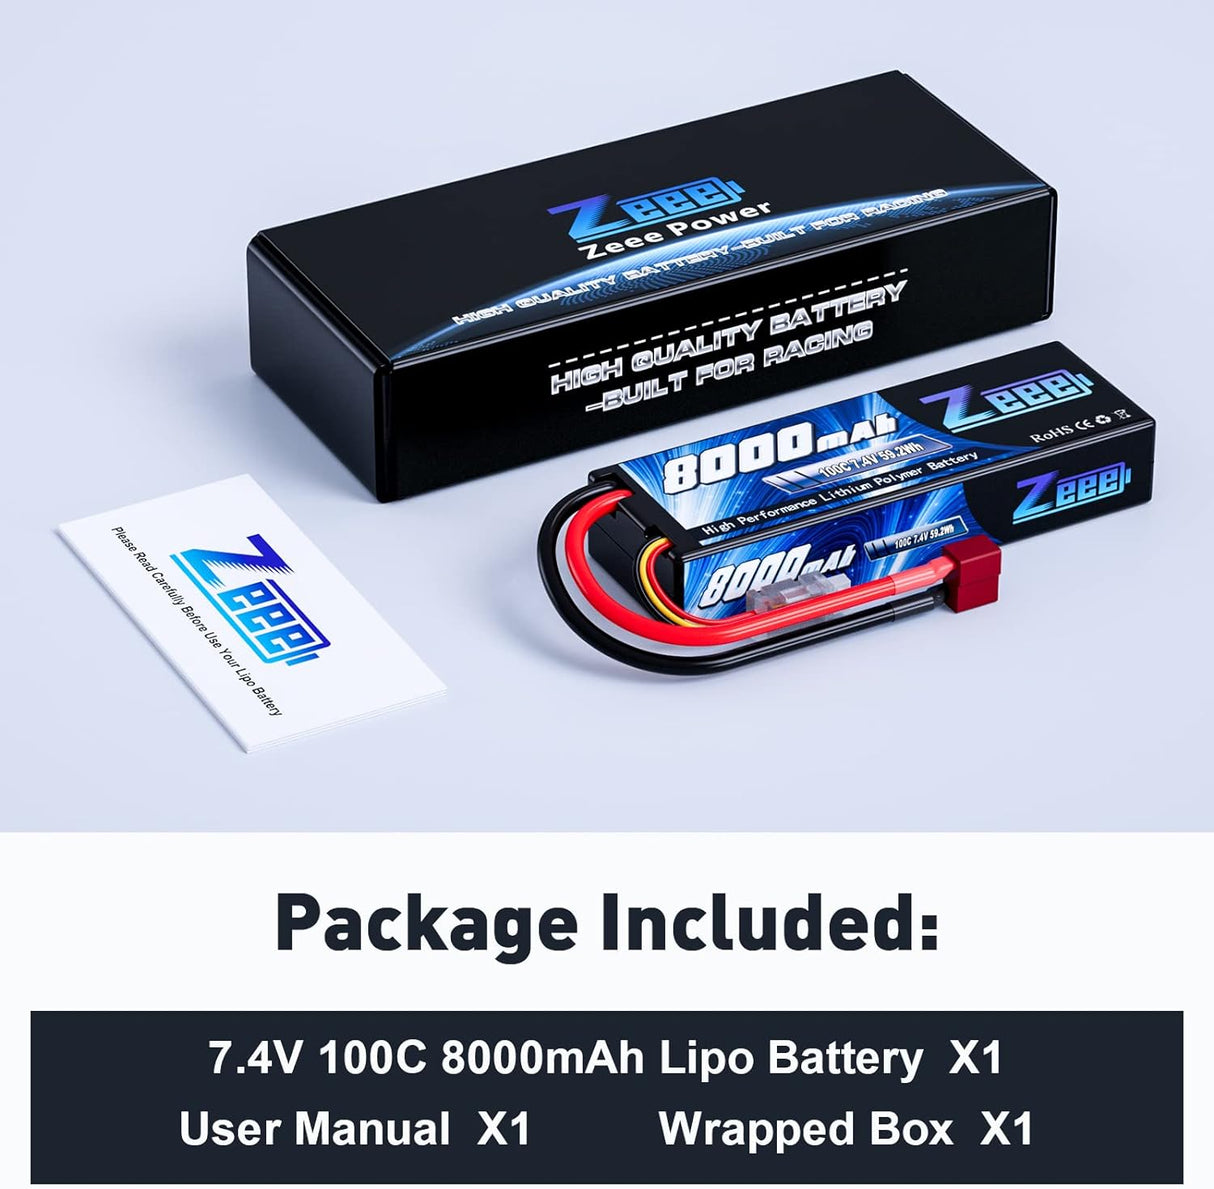 Batterie Lipo Zeee 2S 8000mAh 7.4V 100C, étui rigide, prise Deans